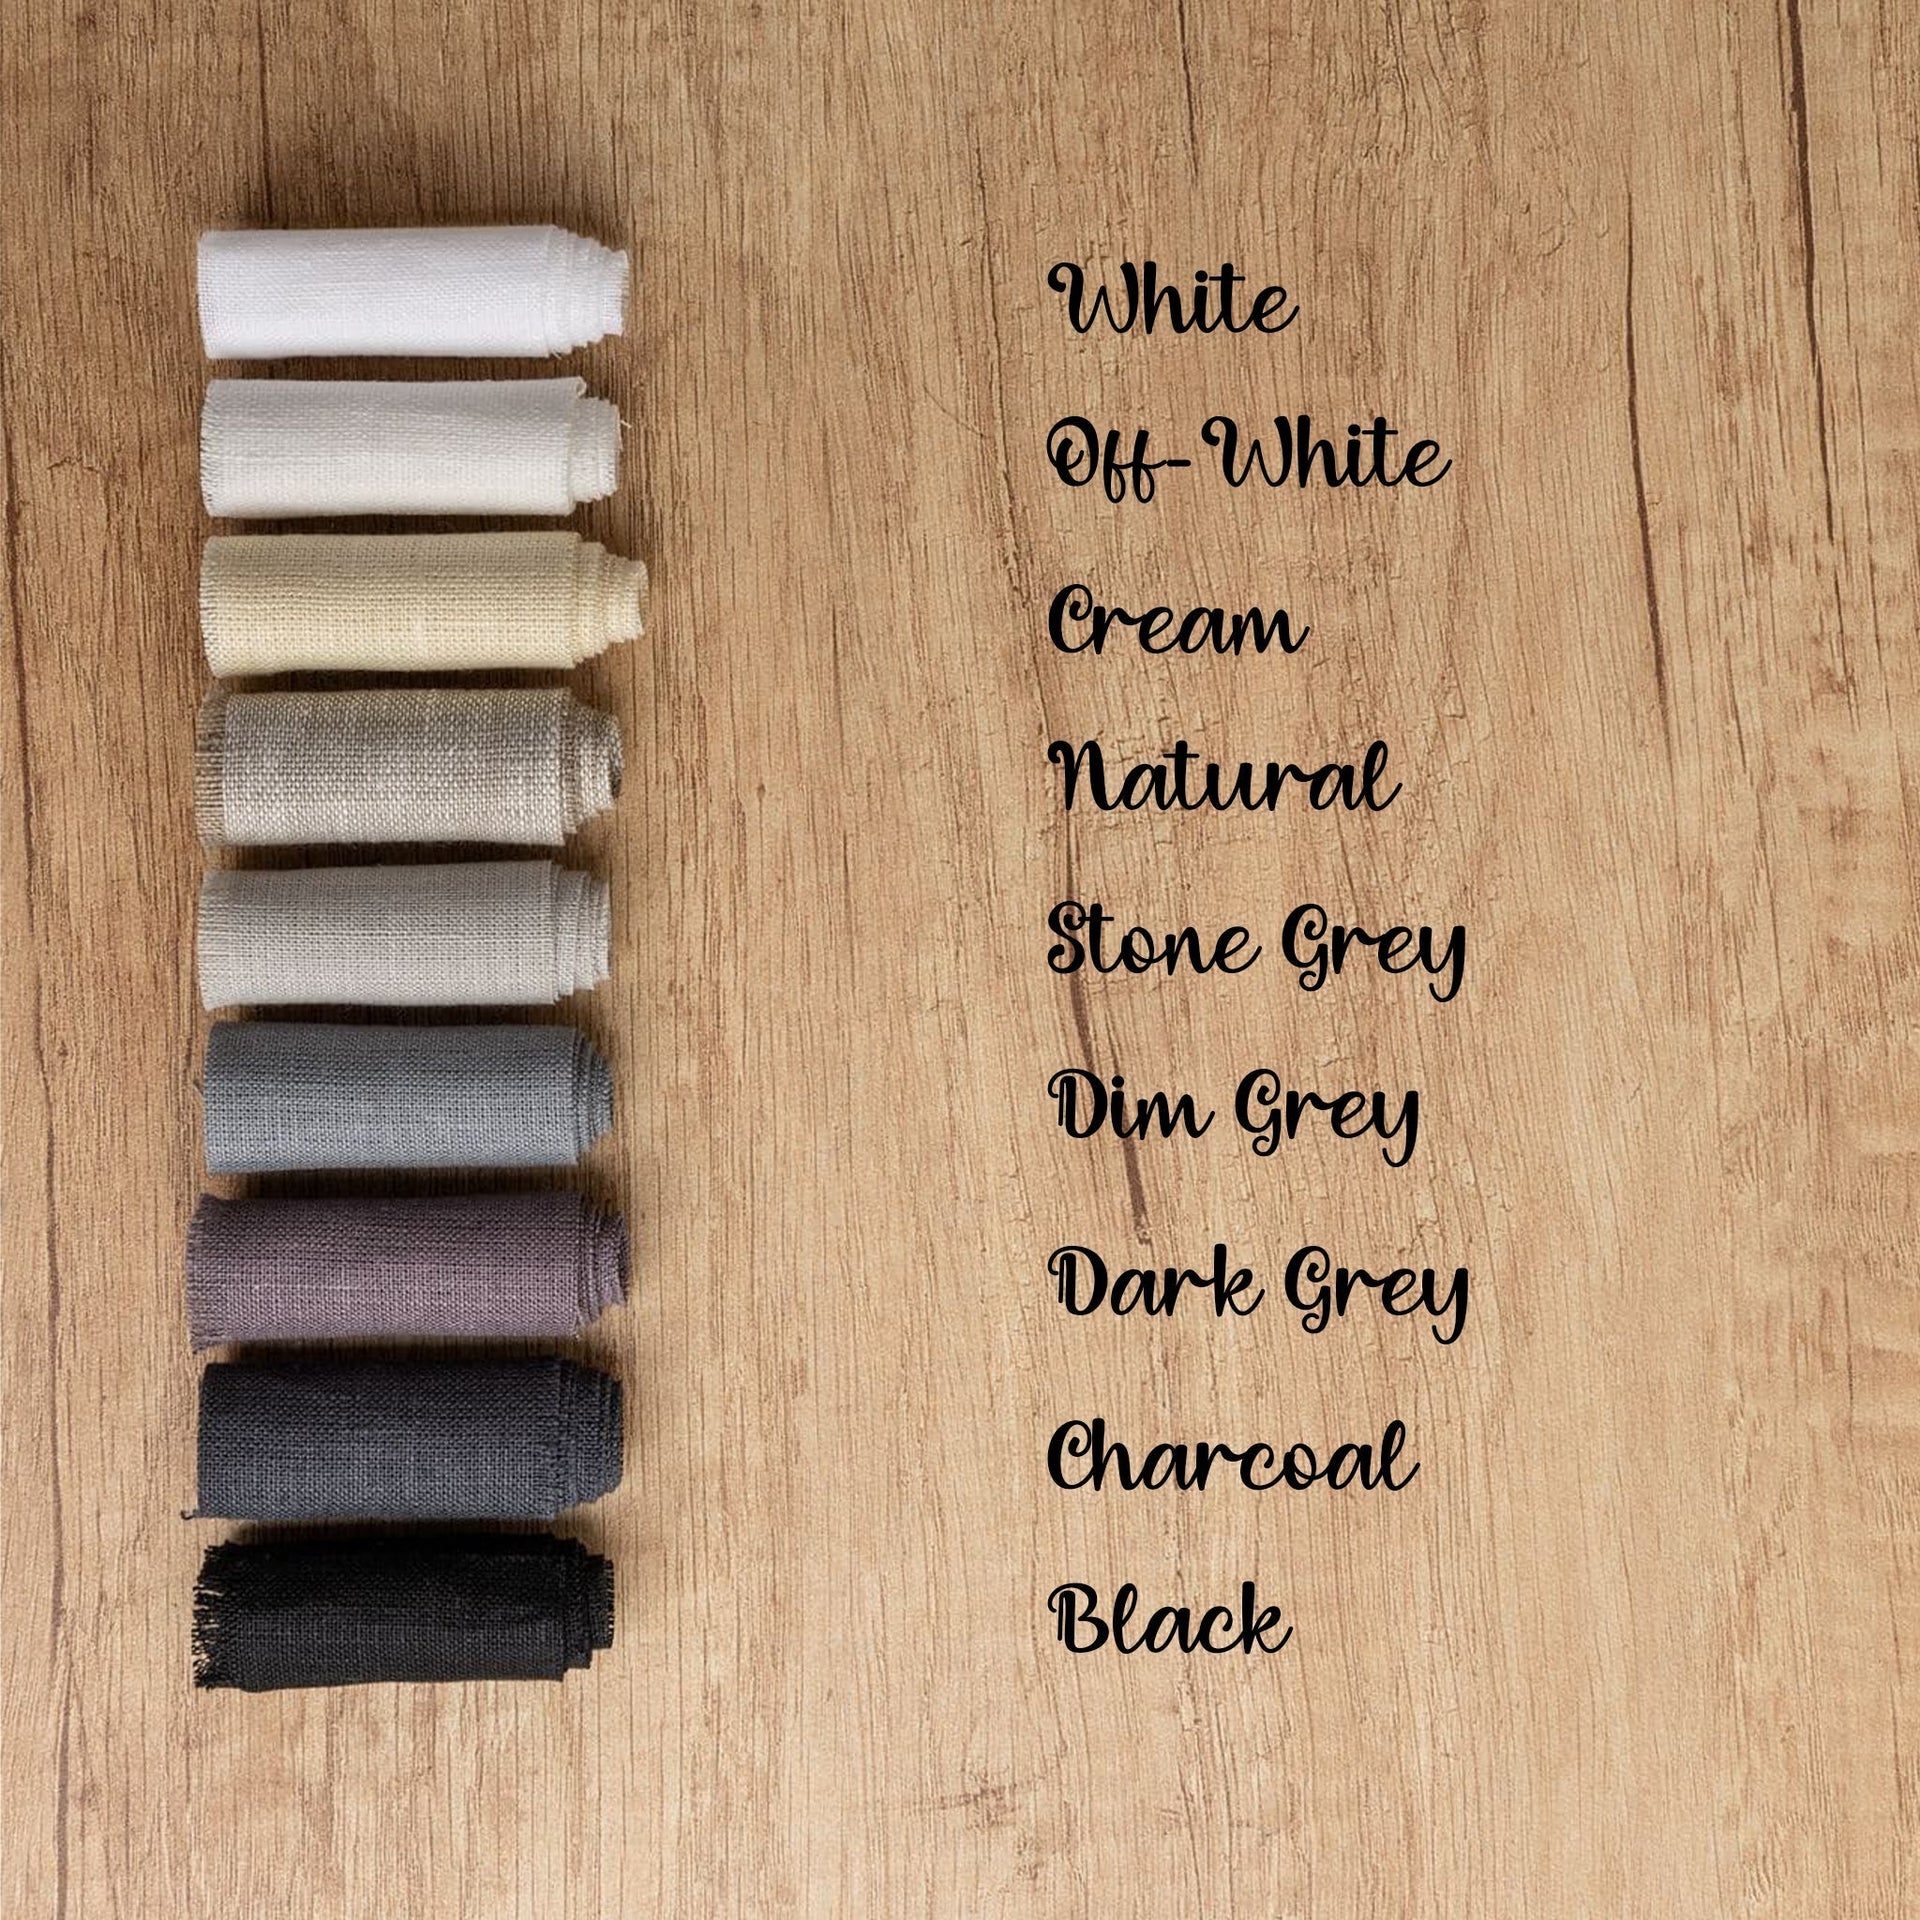 @colour:Stone Grey, colour:Dim Grey, colour:Black, colour:Dark Grey, colour:White, colour:Off-White, colour:Cream, colour:Natural, colour:Dark Grey, colour:Charcoal